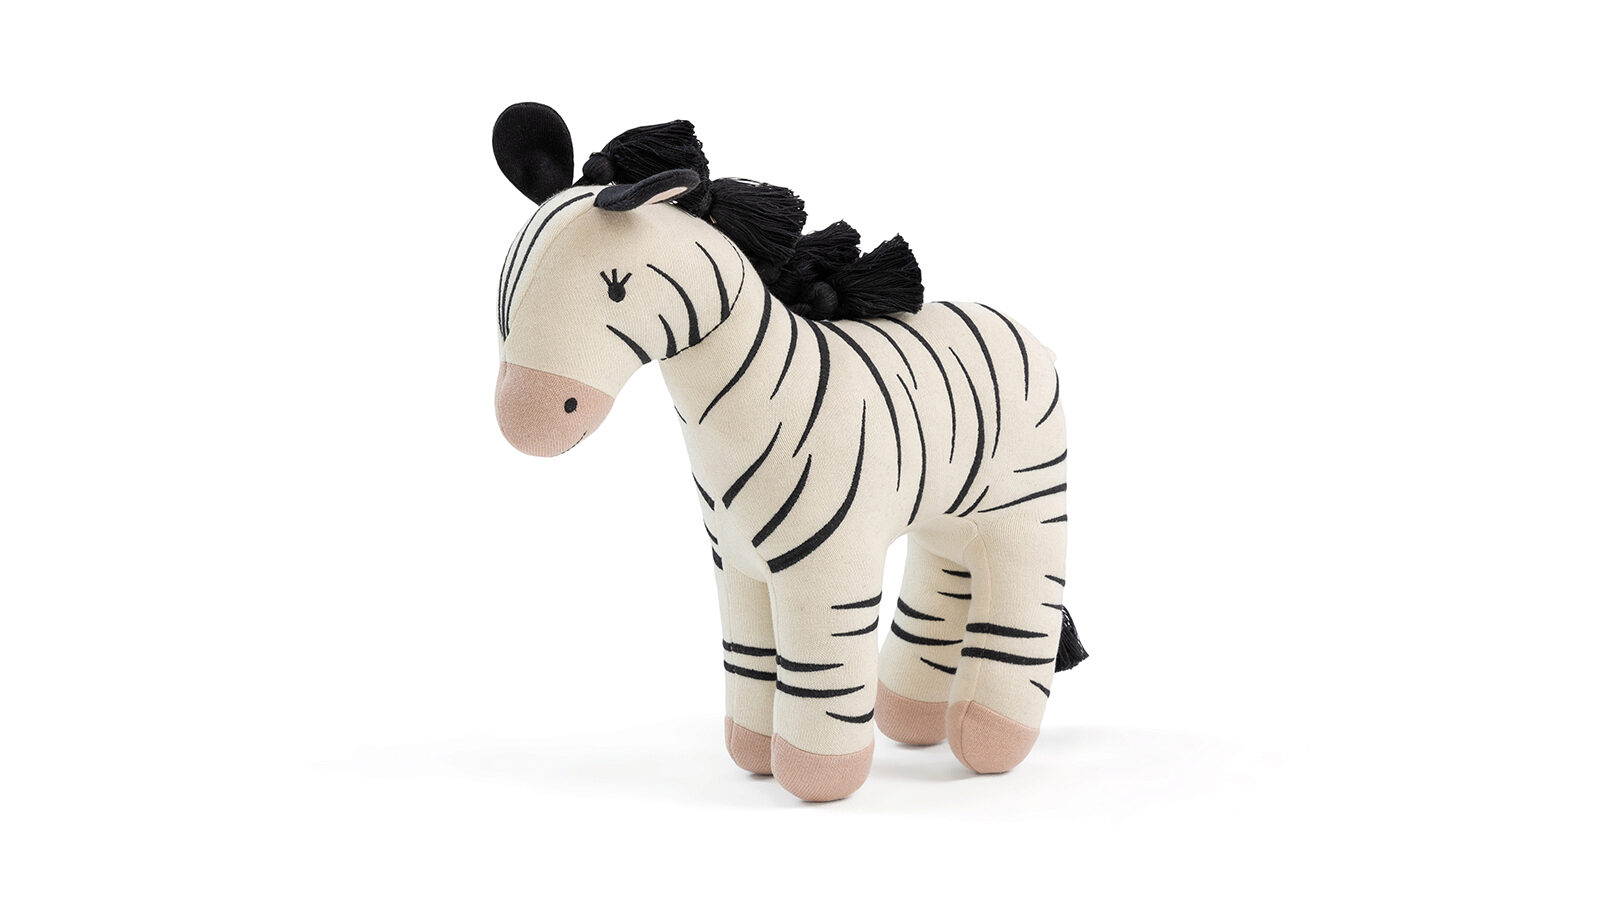 Игрушка Zebra русская игрушка образ символ культурный код